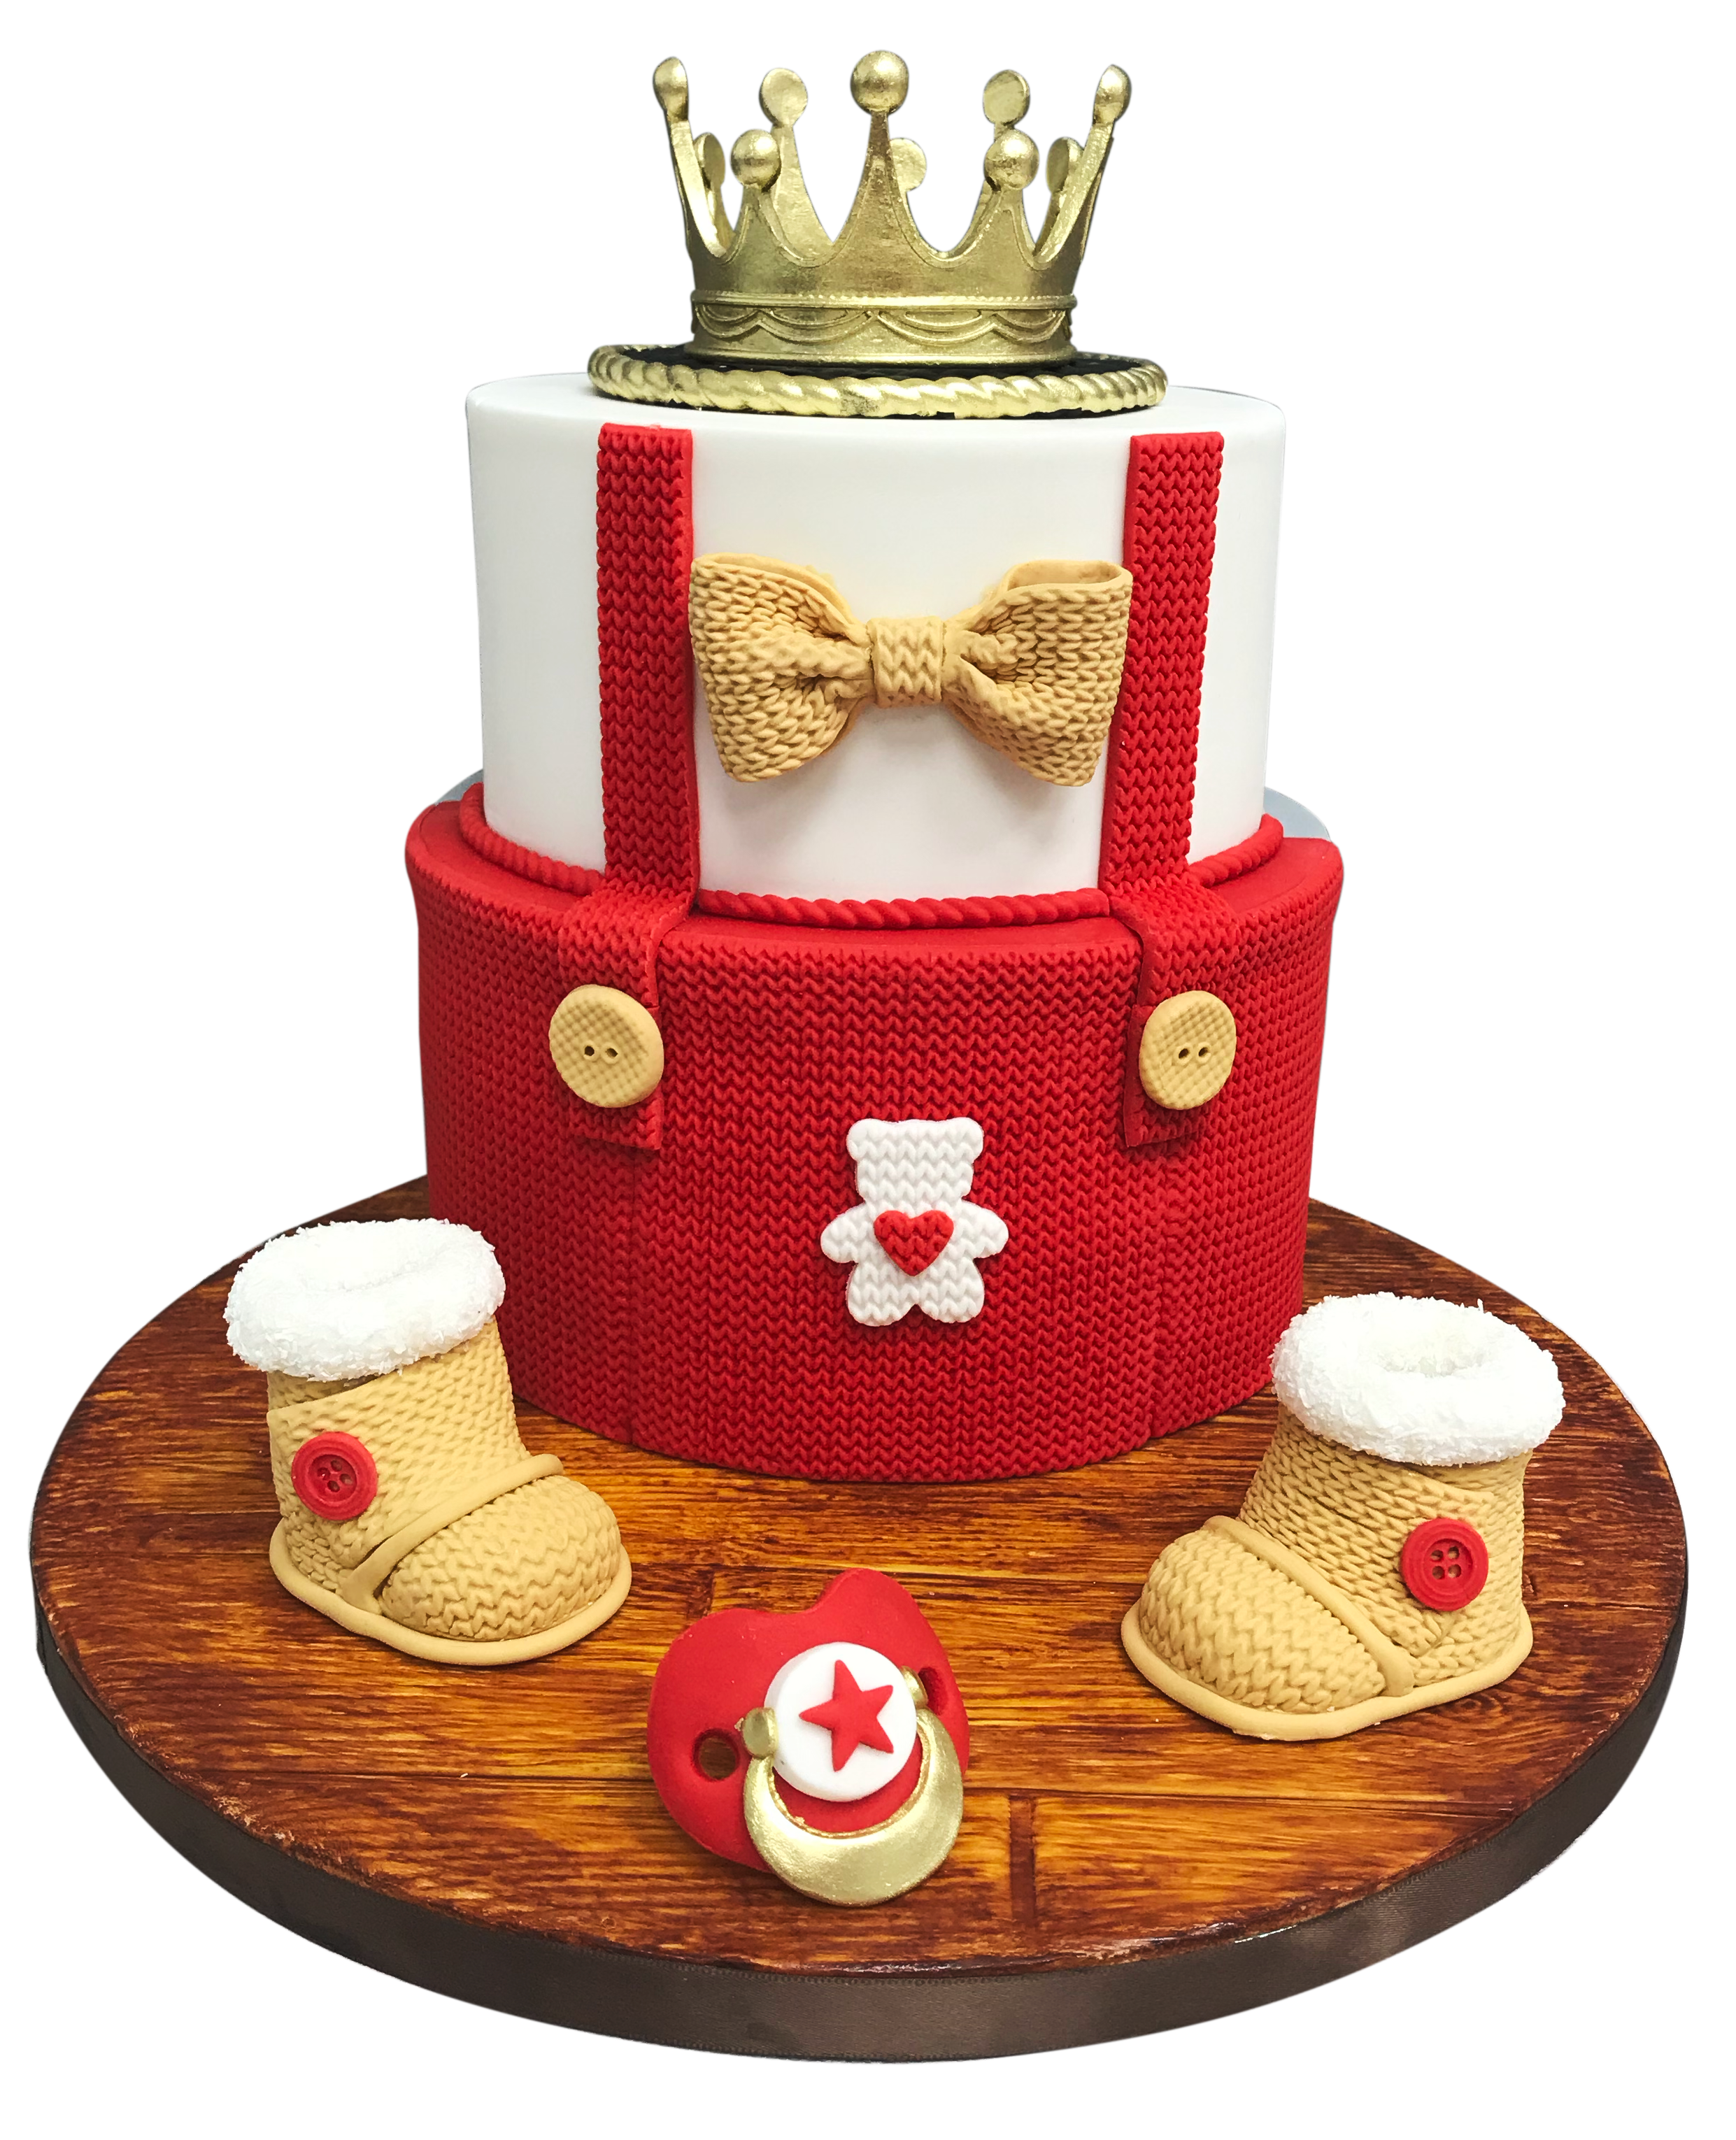 Carolina Cake - Cake Design - Le cake design c'est quoi?